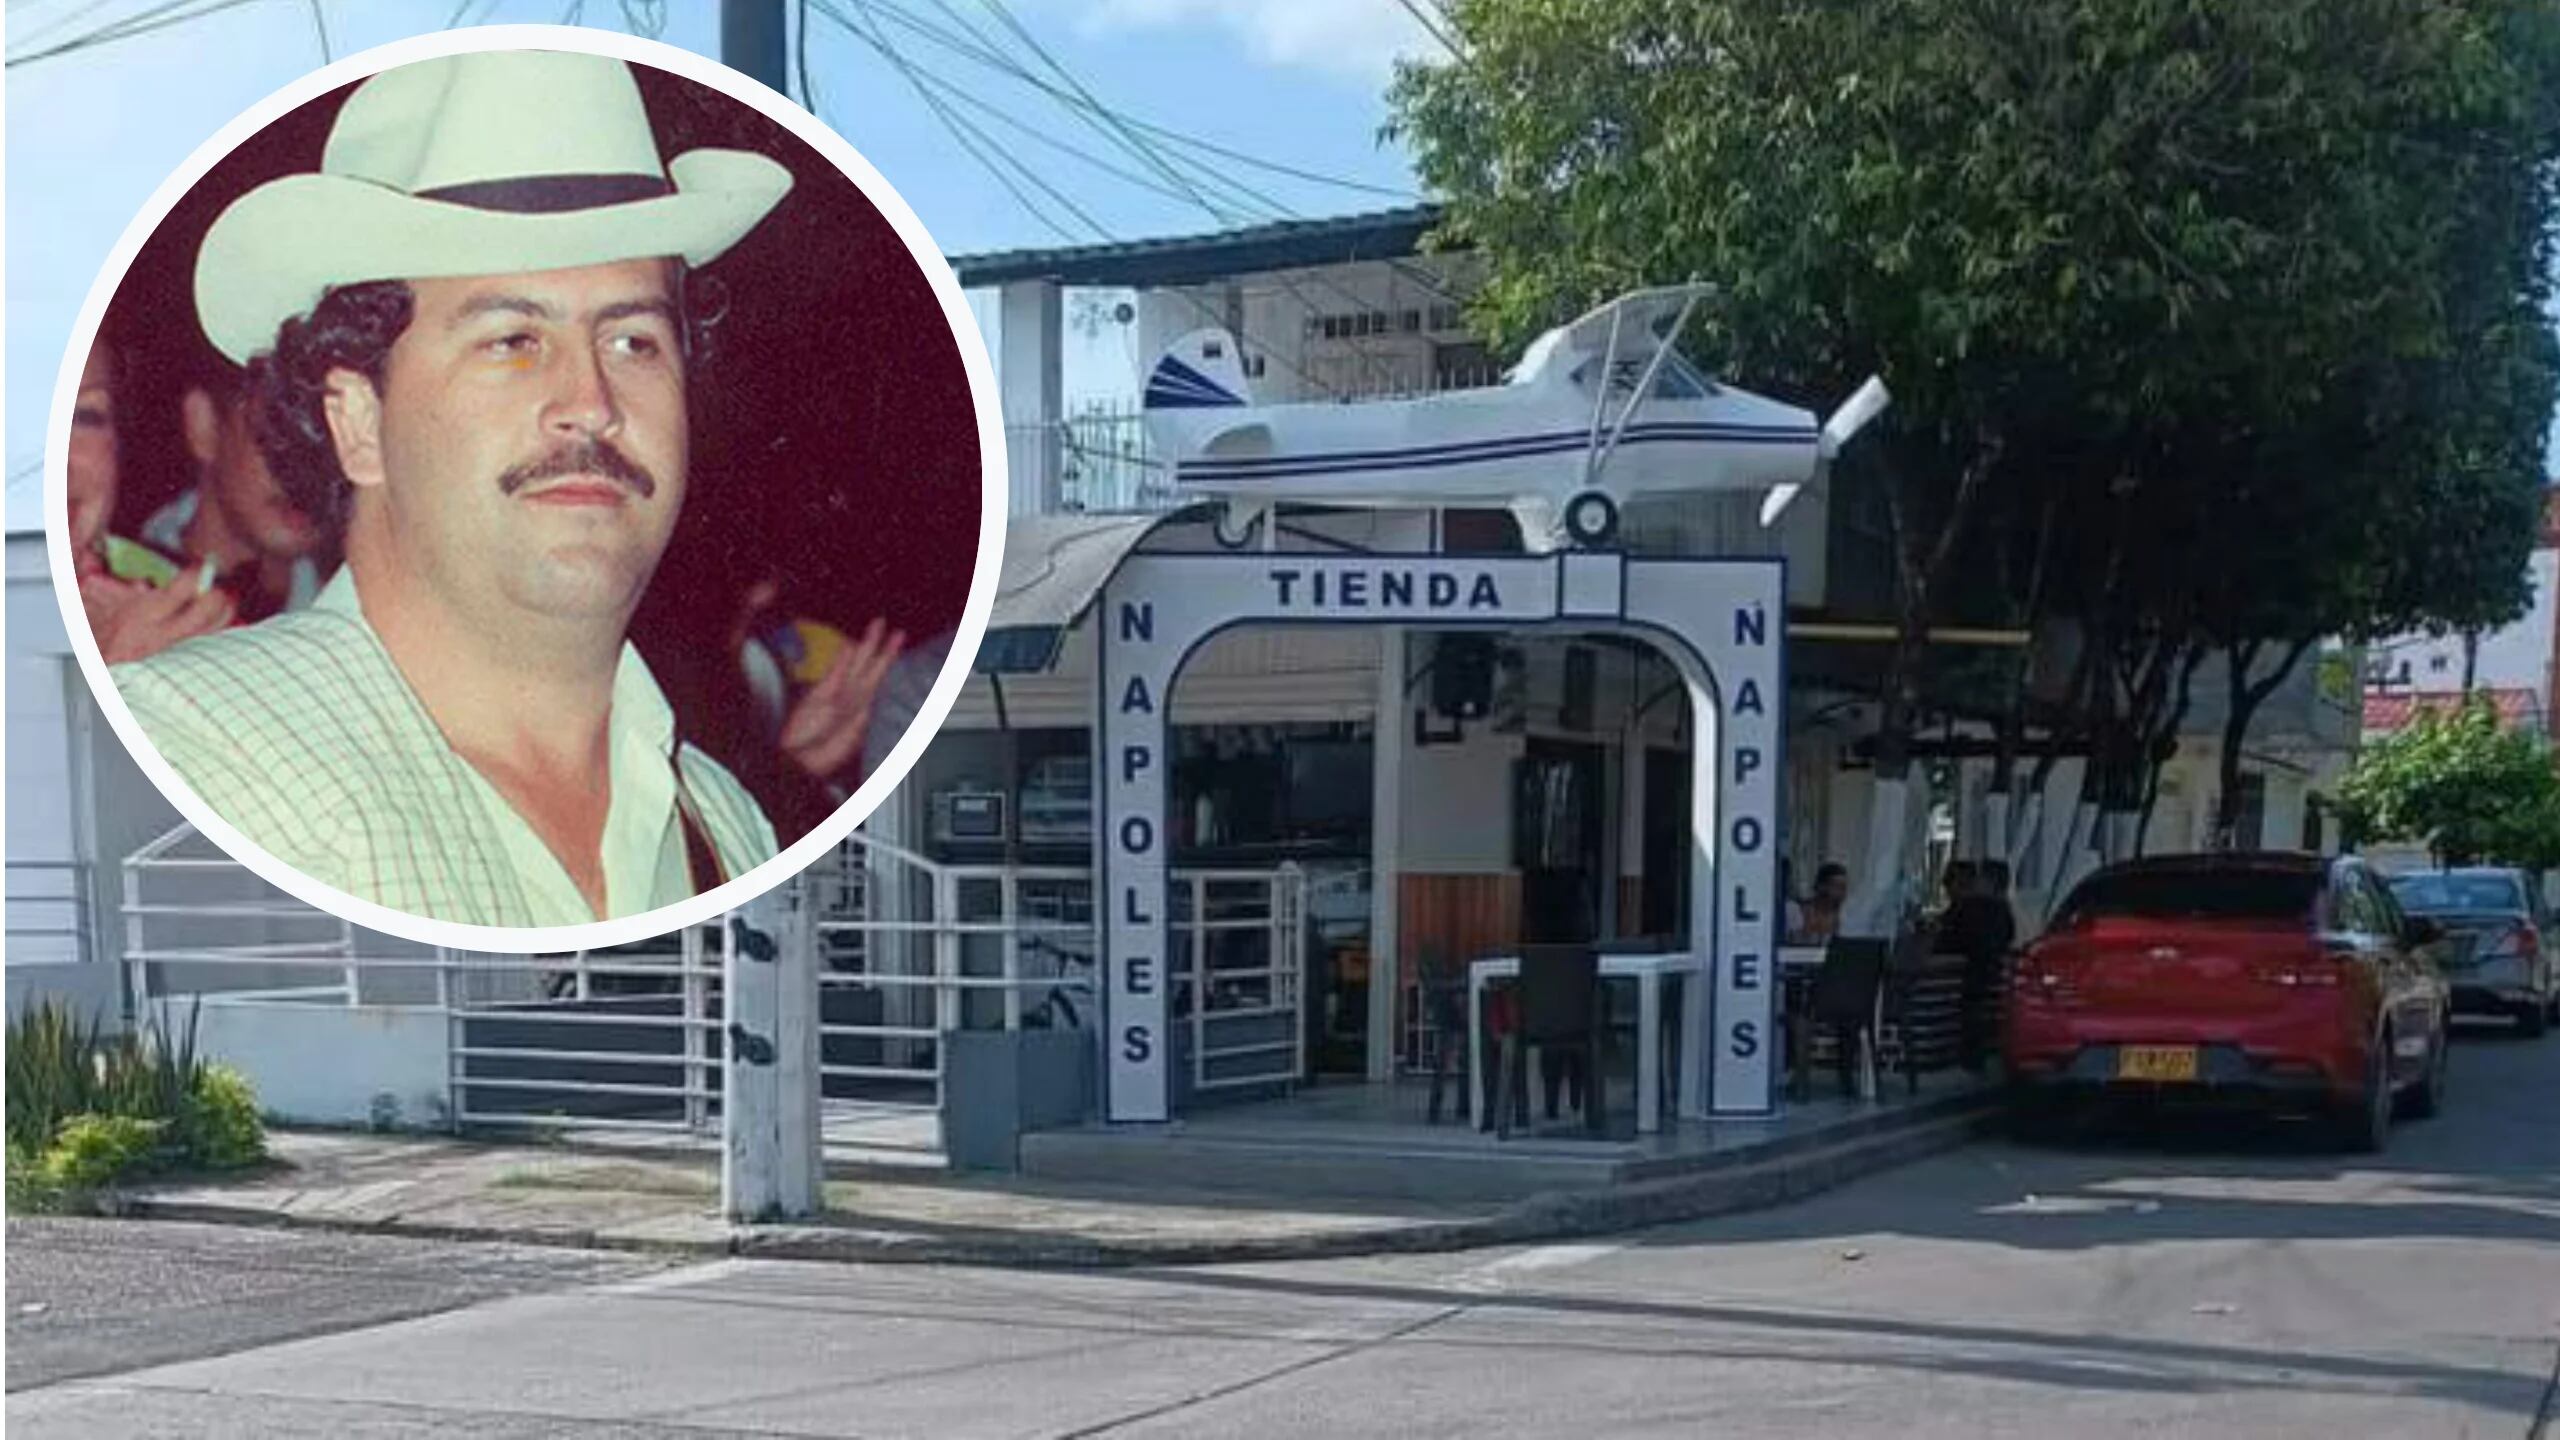 La Tienda Nápoles, el negocio que causa revuelo en Barrancabermeja por homenaje a Pablo Escobar: ¿qué vende?